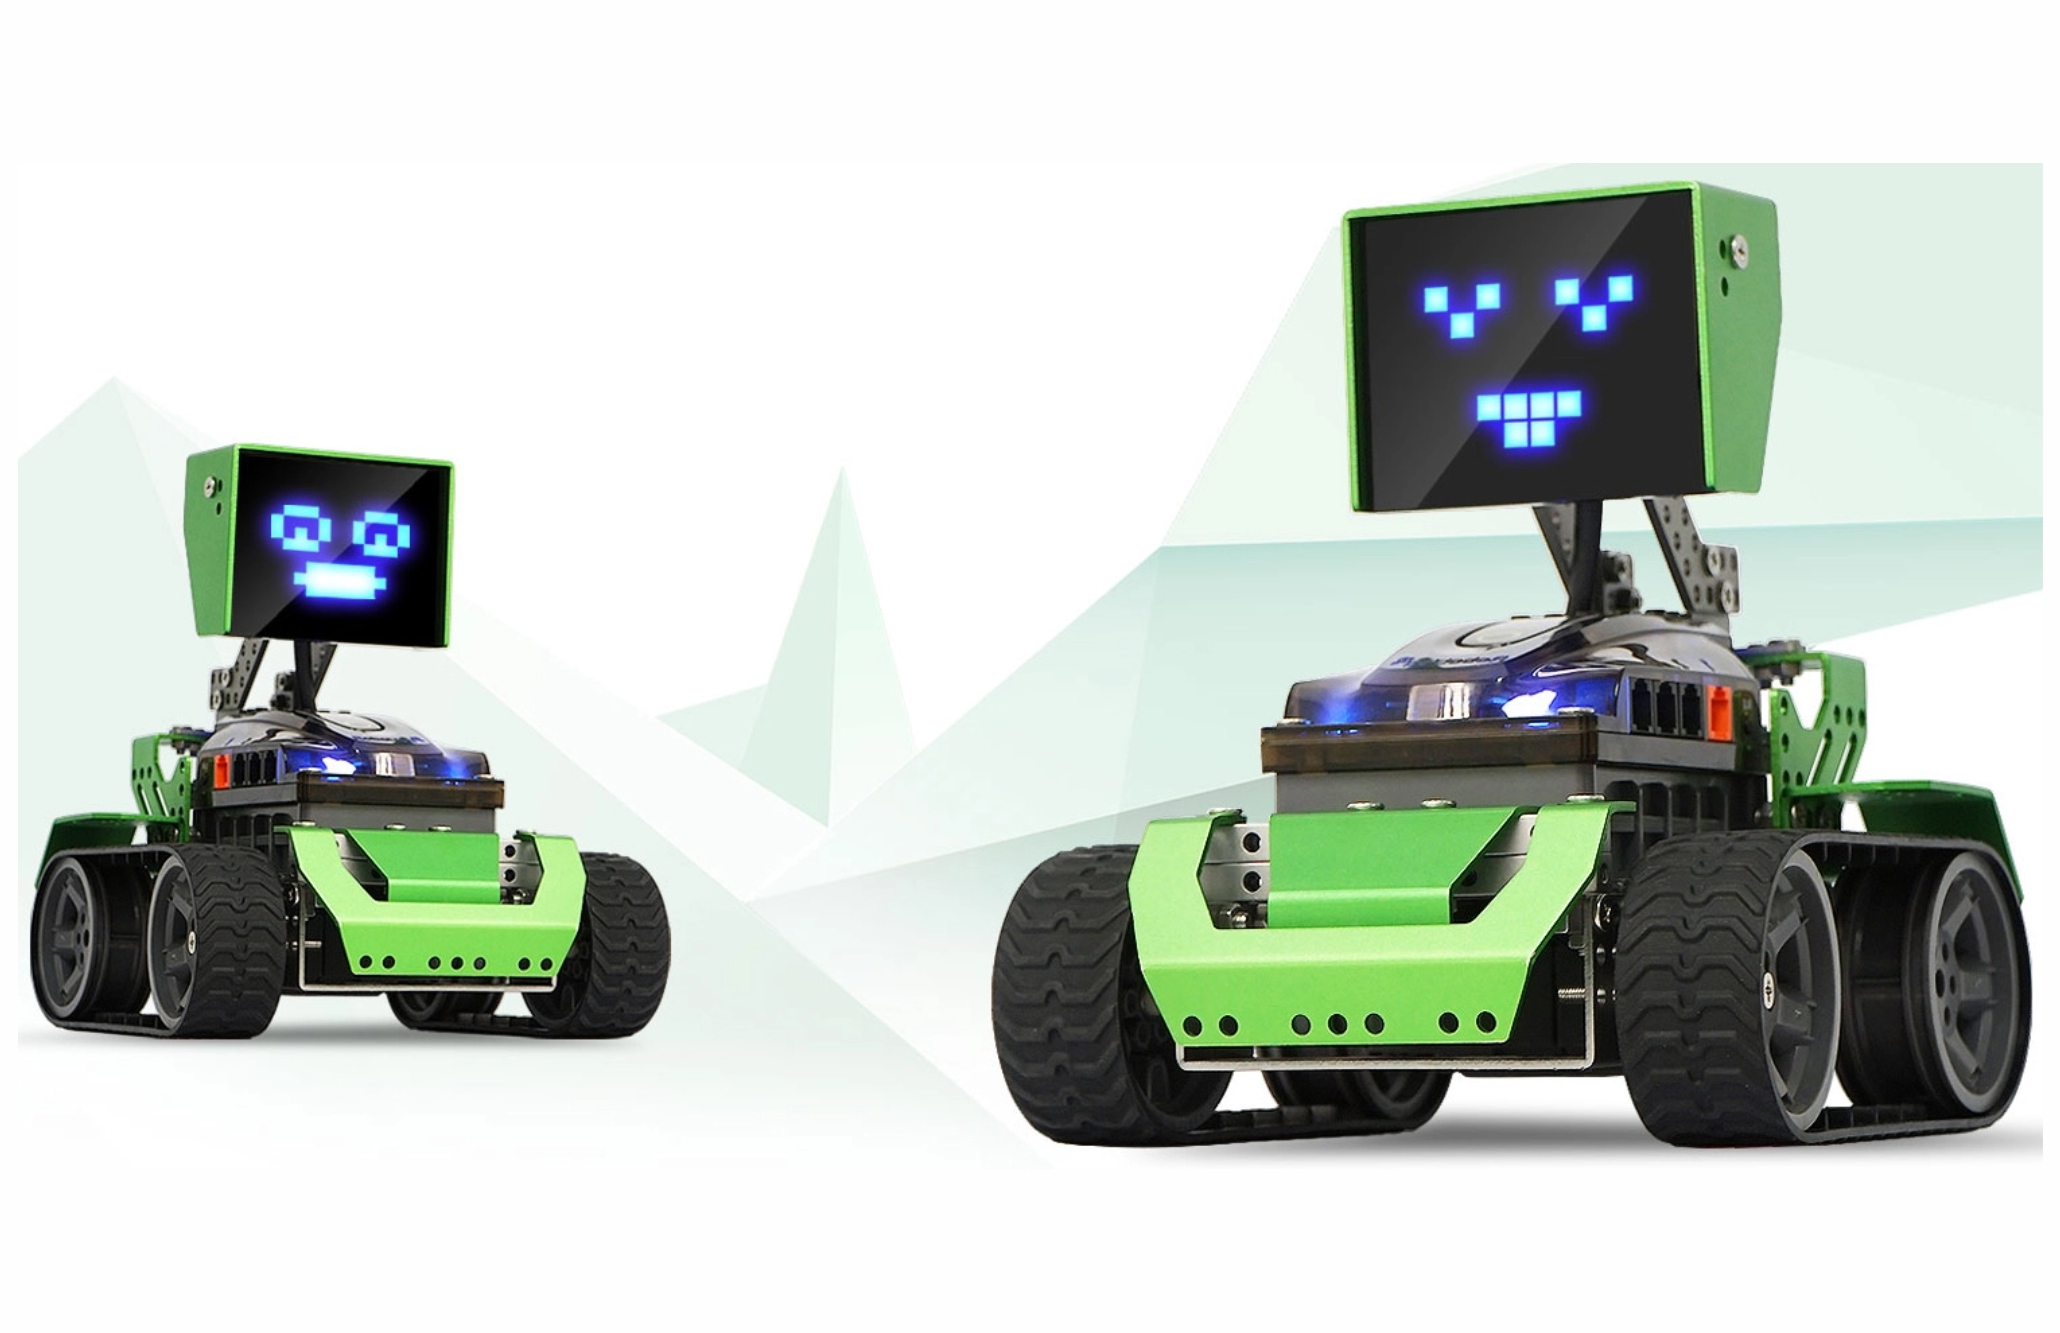 Llegan Aulas Digitales Móviles y kits de robótica a todas las escuelas secundarias de la provincia